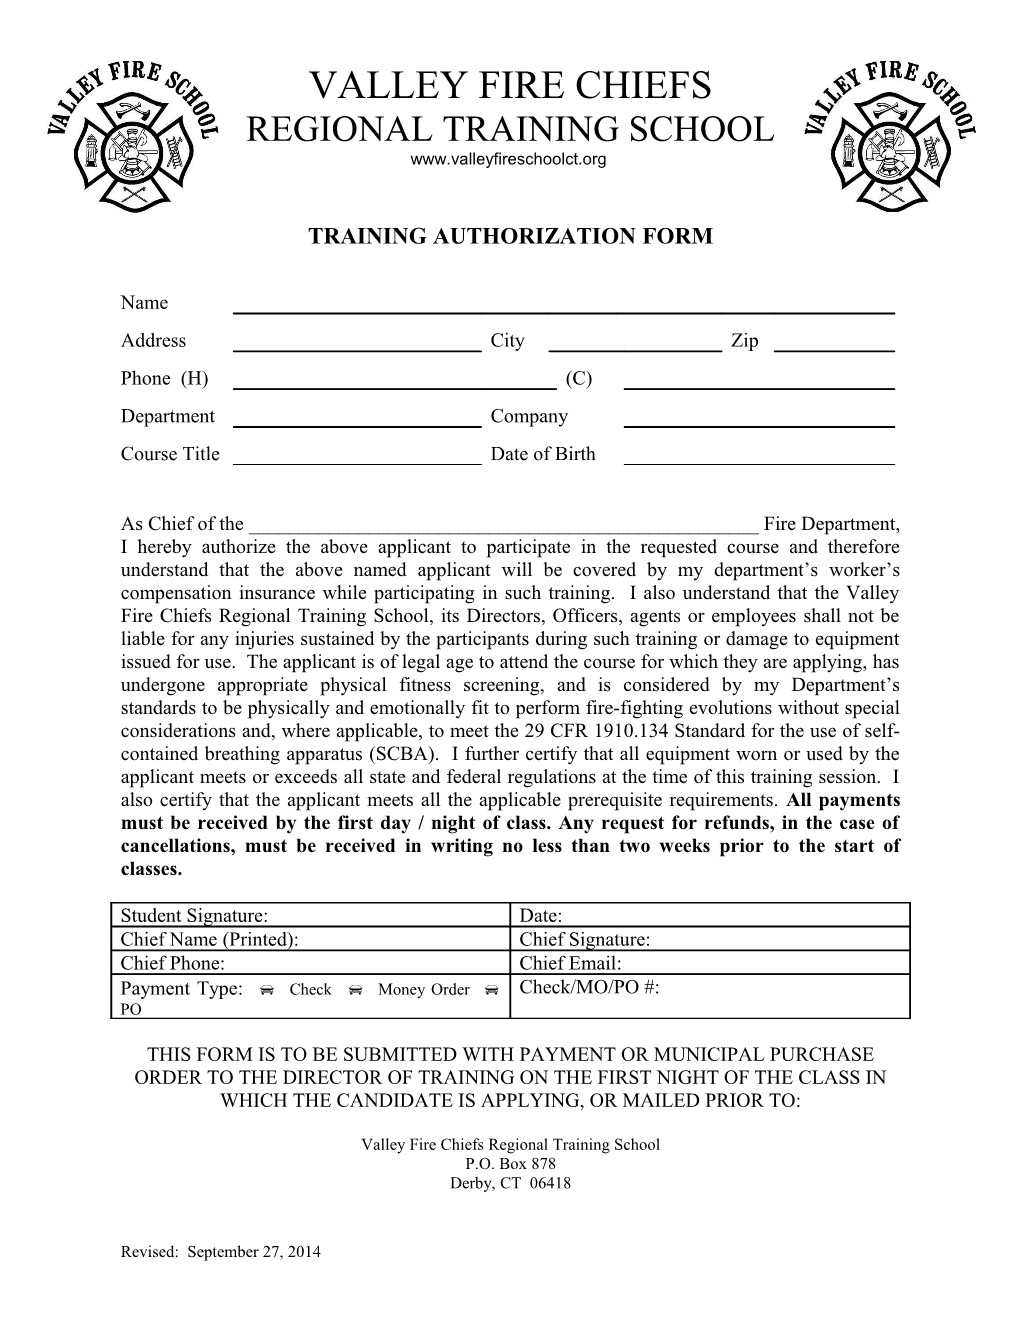 Training Authorization Form